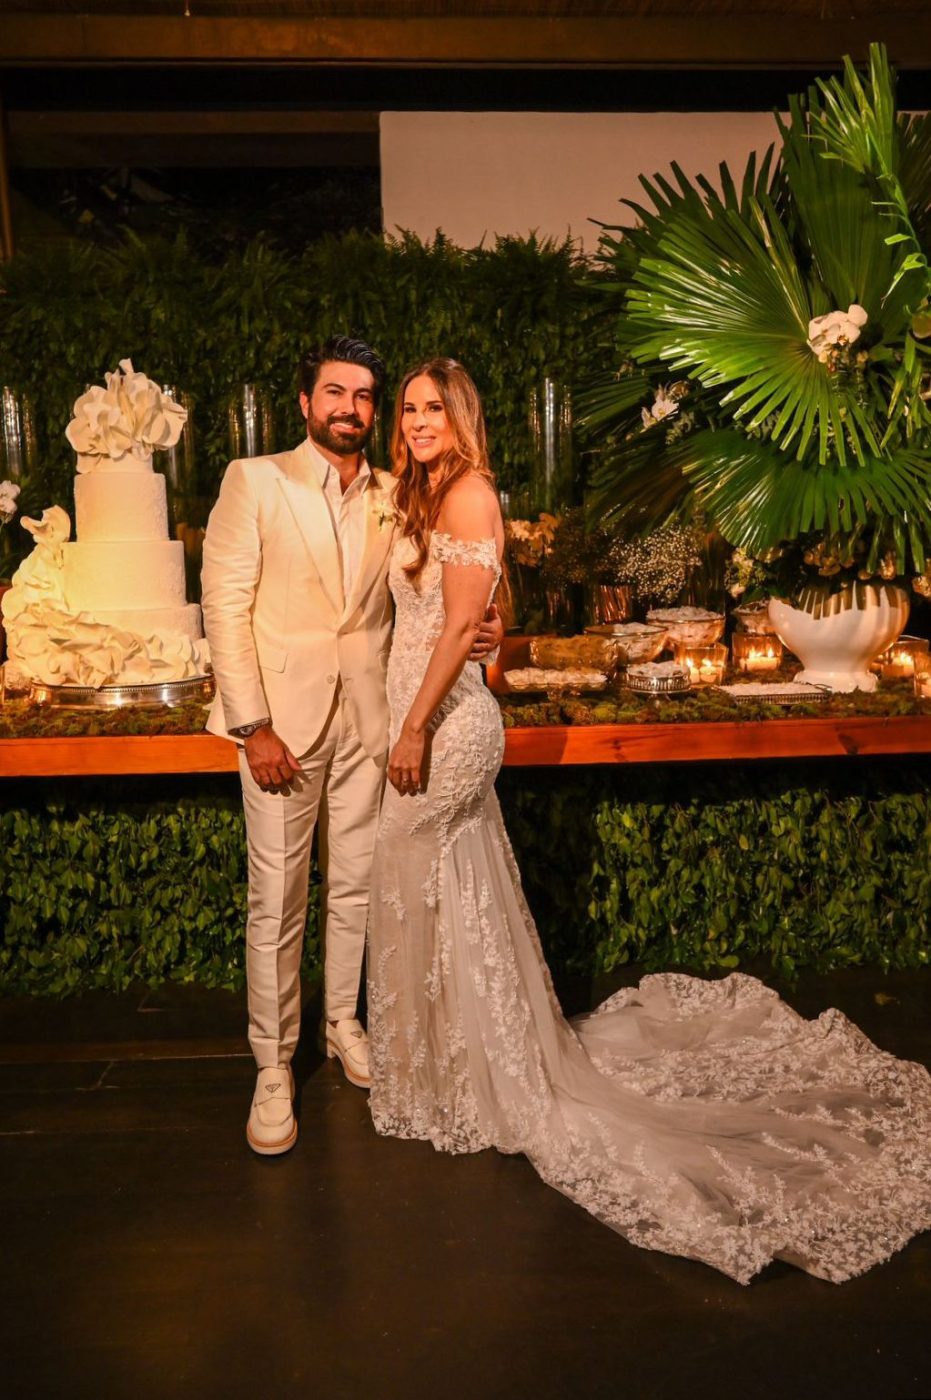 Dermatologista Thais Cerqueira se casa com o empresário Bruno Silvestre em festa animada por Carlinhos Brown em Salvador. Veja fotos